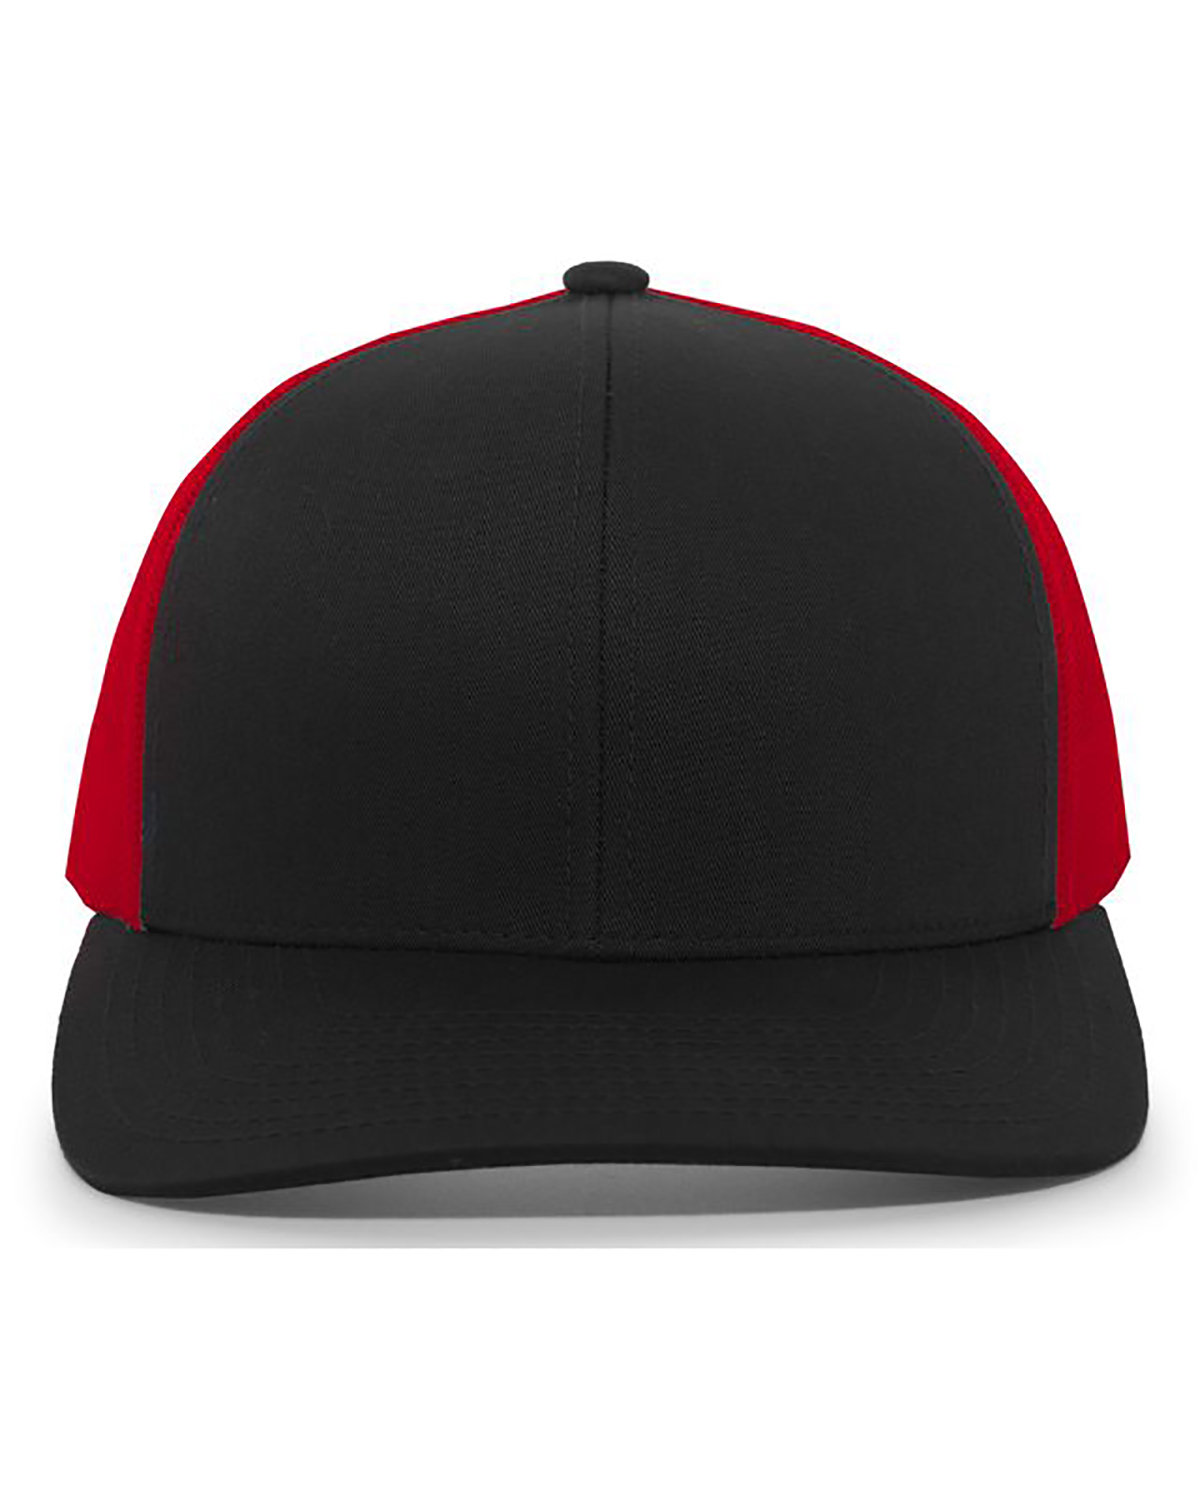 Pacific Headwear Trucker Snapback Hat BLACK/ RED/ BLK 